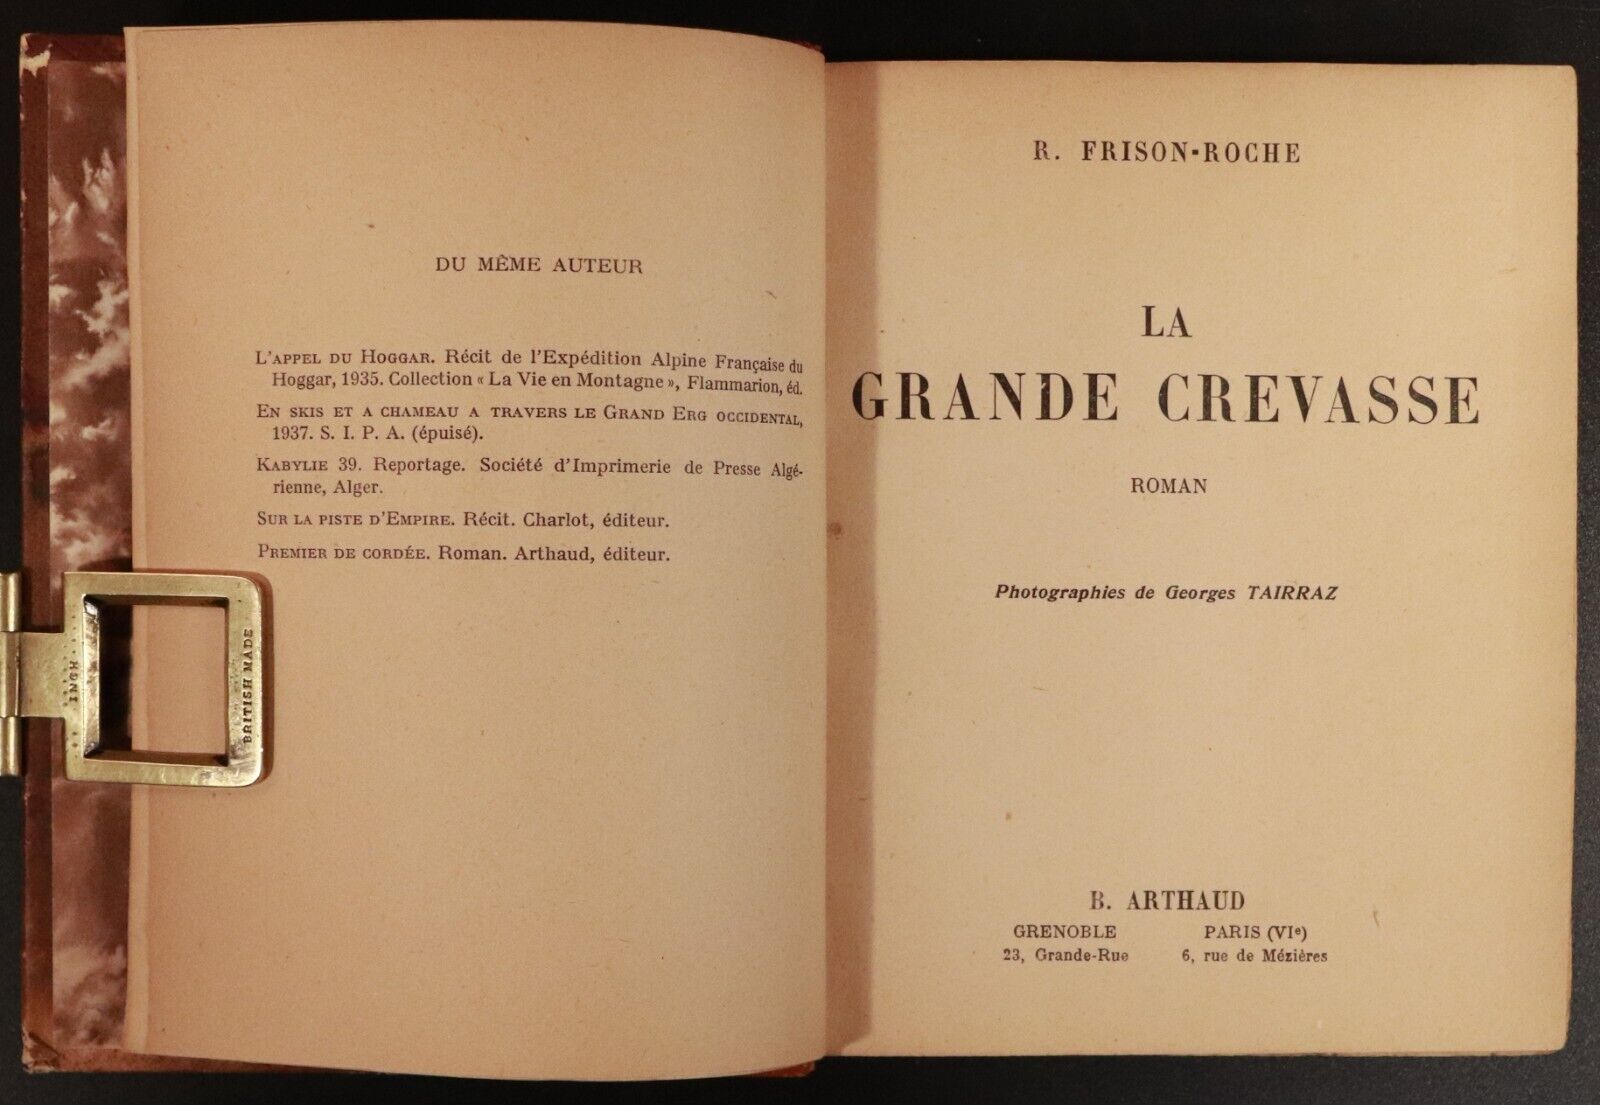 1948 La Grande Crevasse by R Frison Roche French Adventure Book Fine Binding - 0